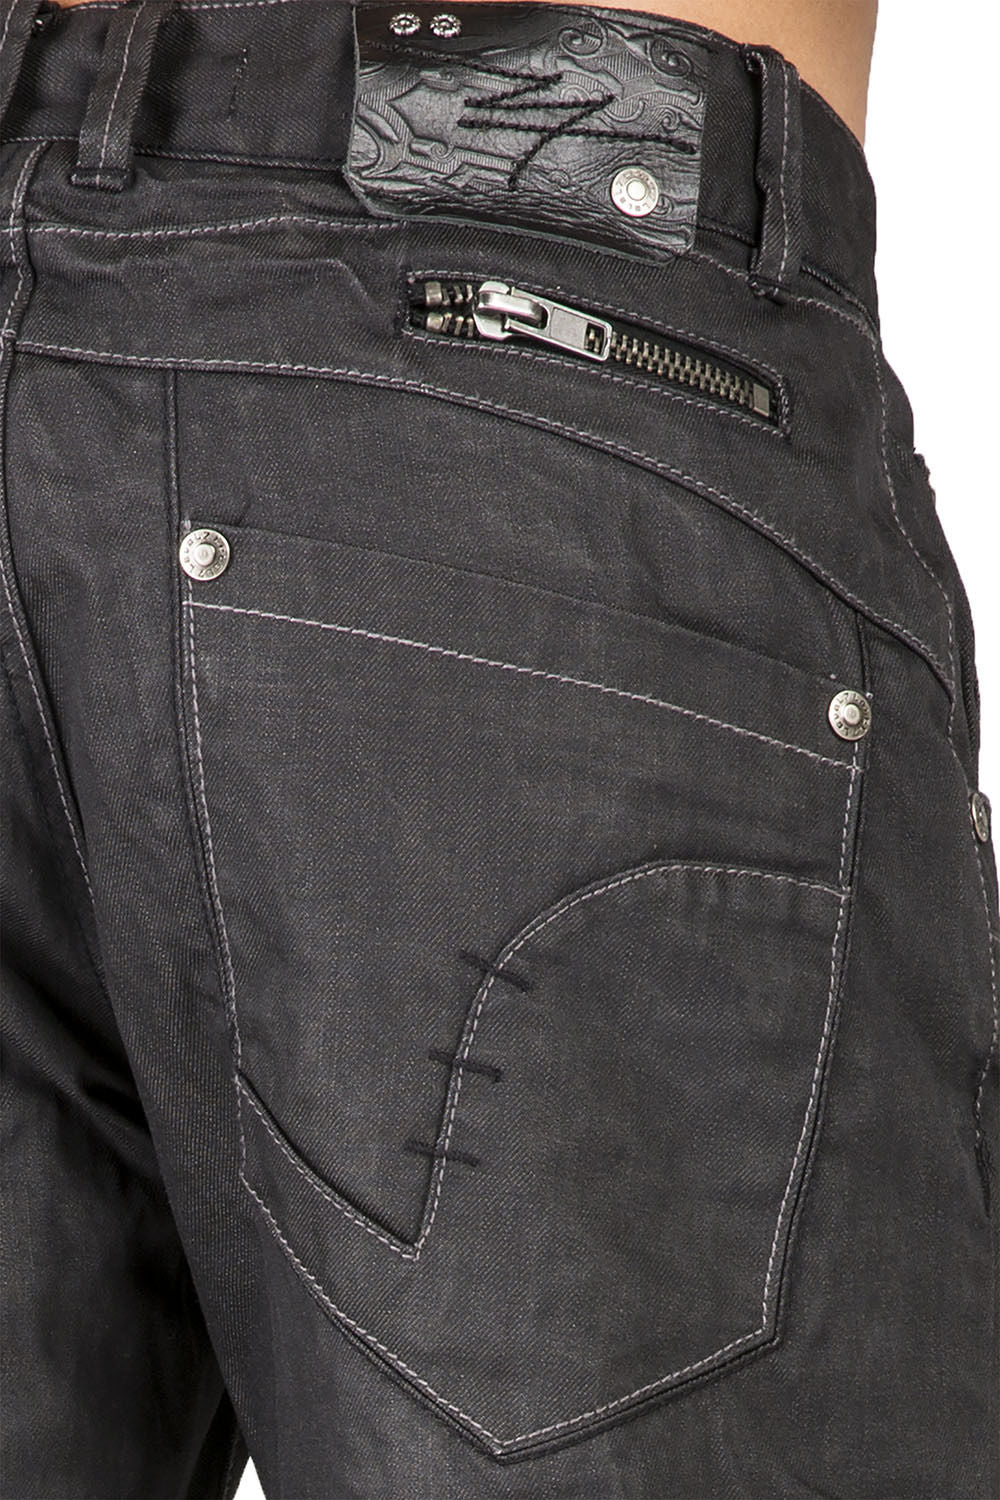 Men's Relaxed Bootcut Premium Coating Black Denim Jeans Zipper Trim Pocket Wrinkle Whisker